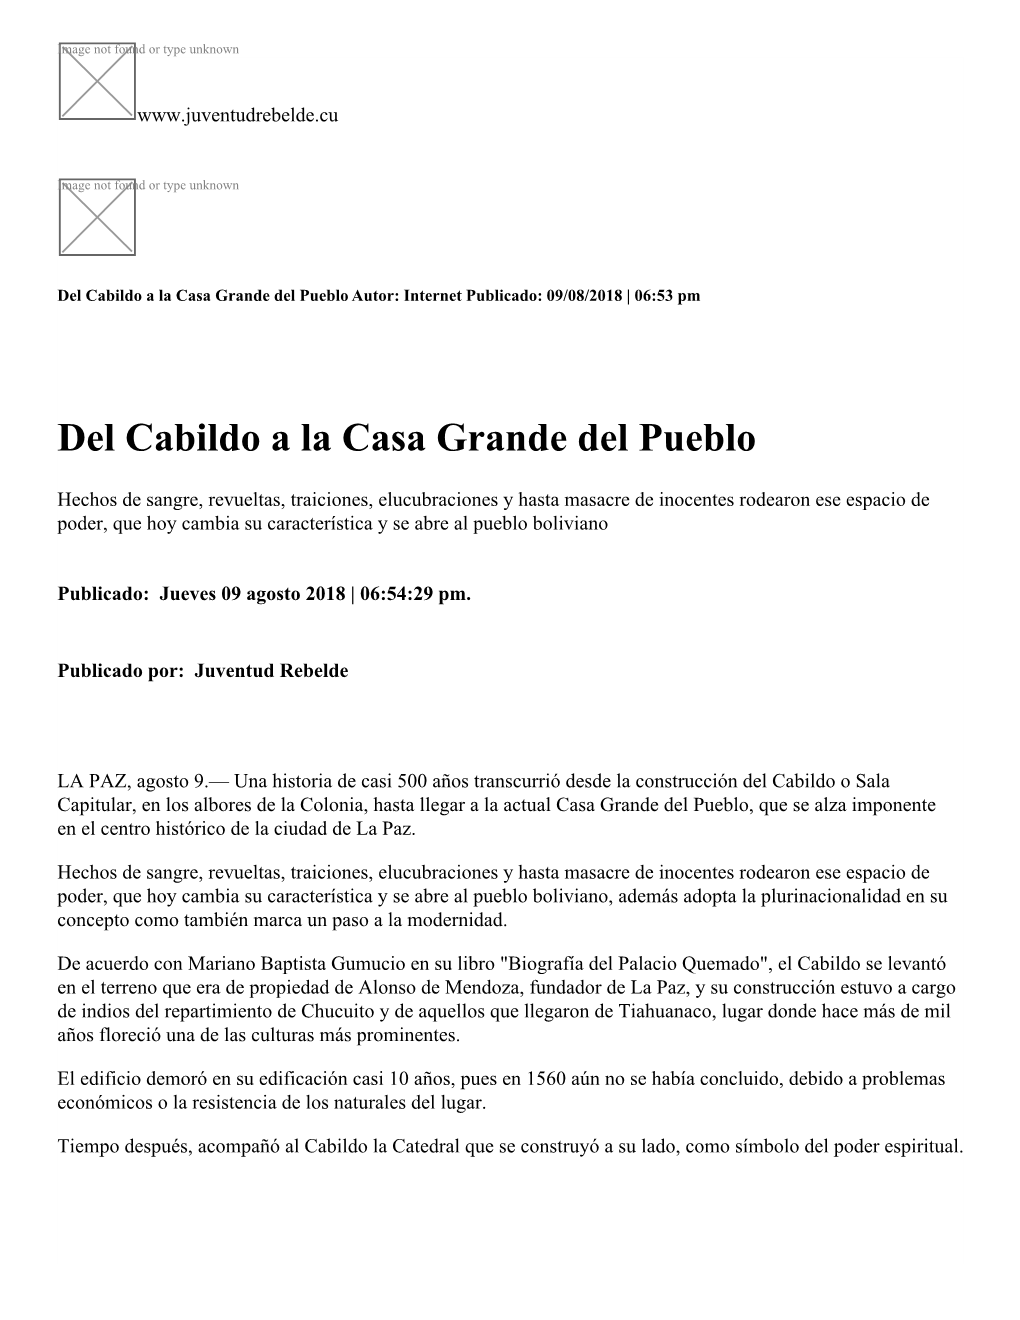 Del Cabildo a La Casa Grande Del Pueblo Autor: Internet Publicado: 09/08/2018 | 06:53 Pm